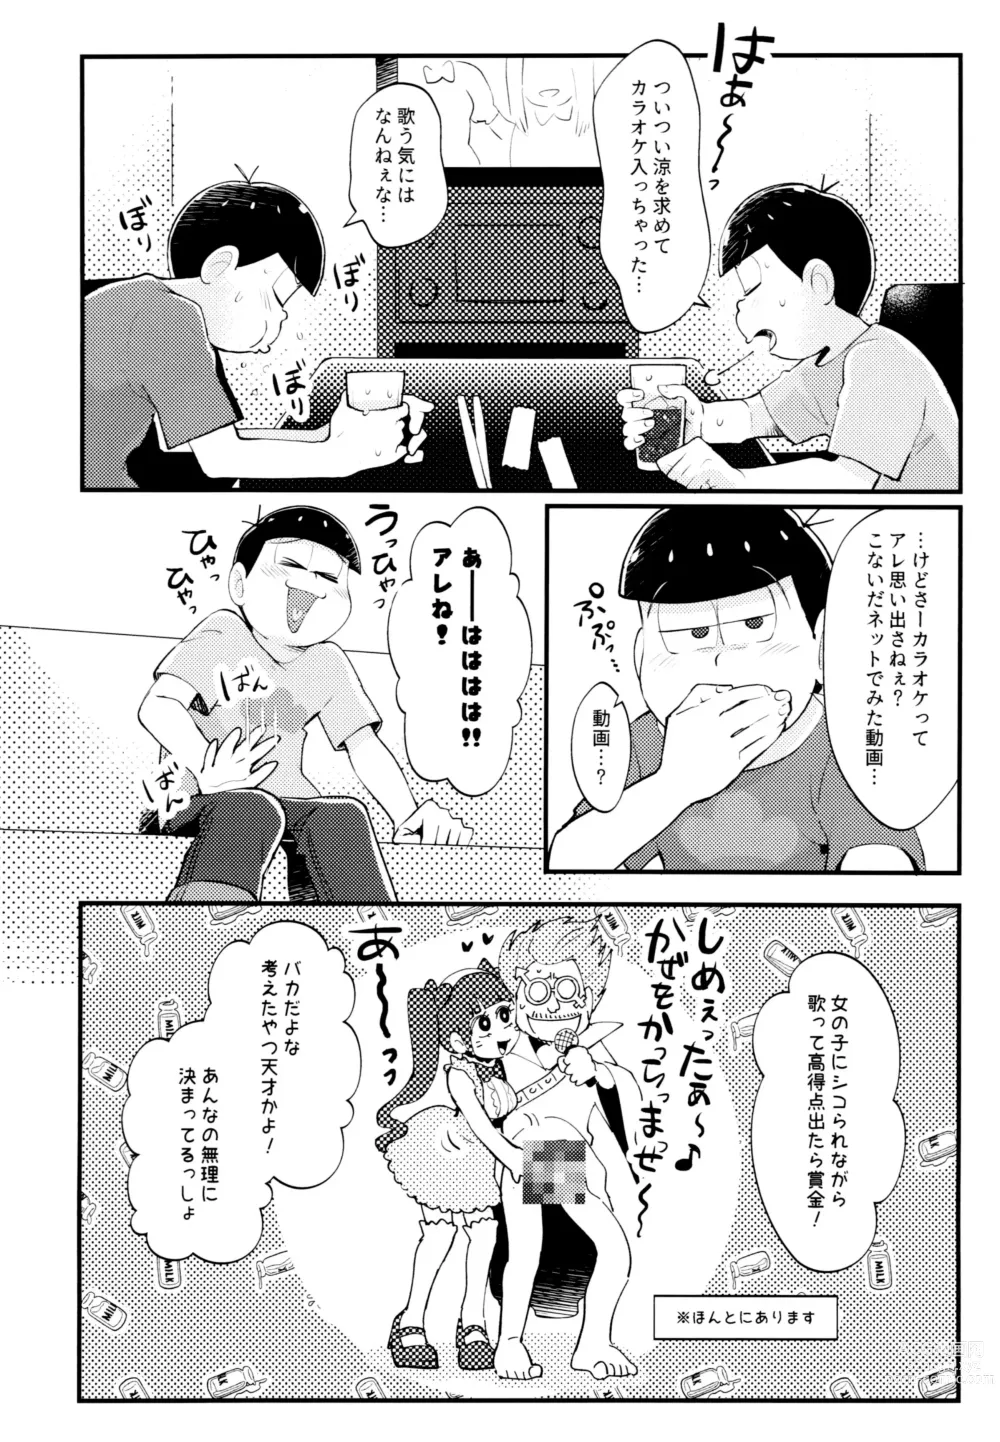 Page 5 of doujinshi Manatsu no!! Shikoshiko Karaoke Dai Battle!!